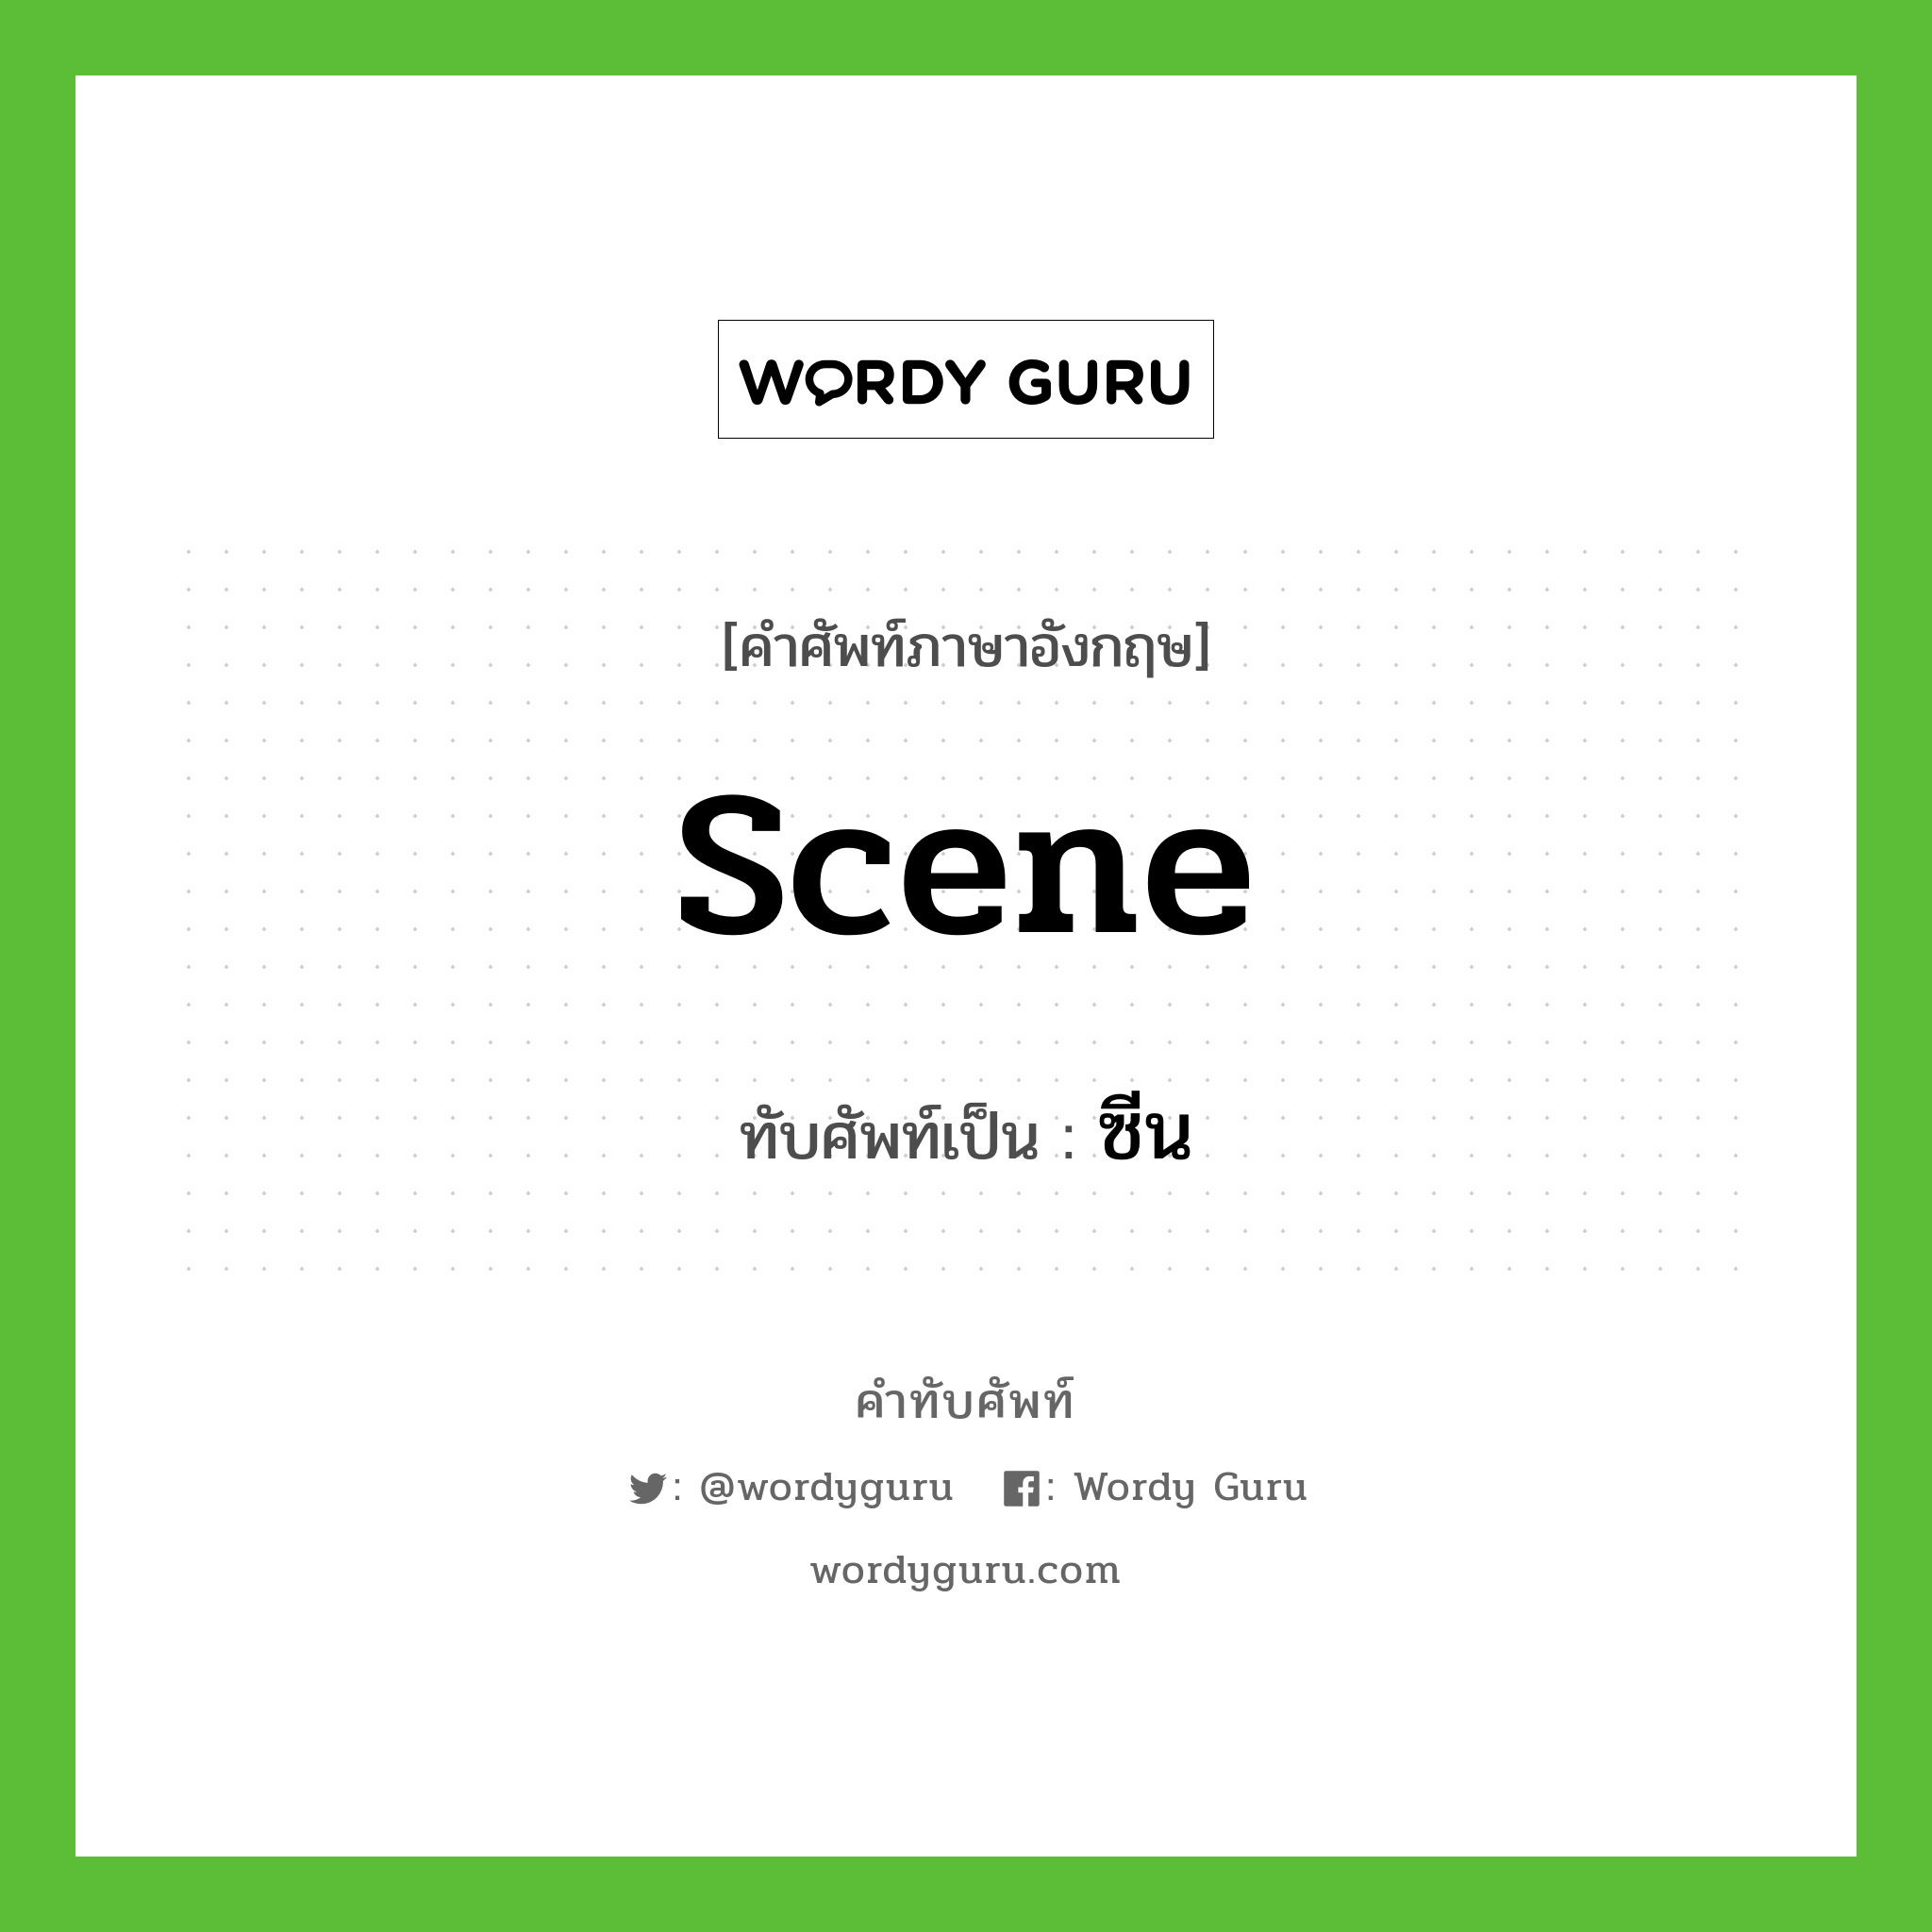 scene เขียนเป็นคำไทยว่าอะไร?, คำศัพท์ภาษาอังกฤษ scene ทับศัพท์เป็น ซีน